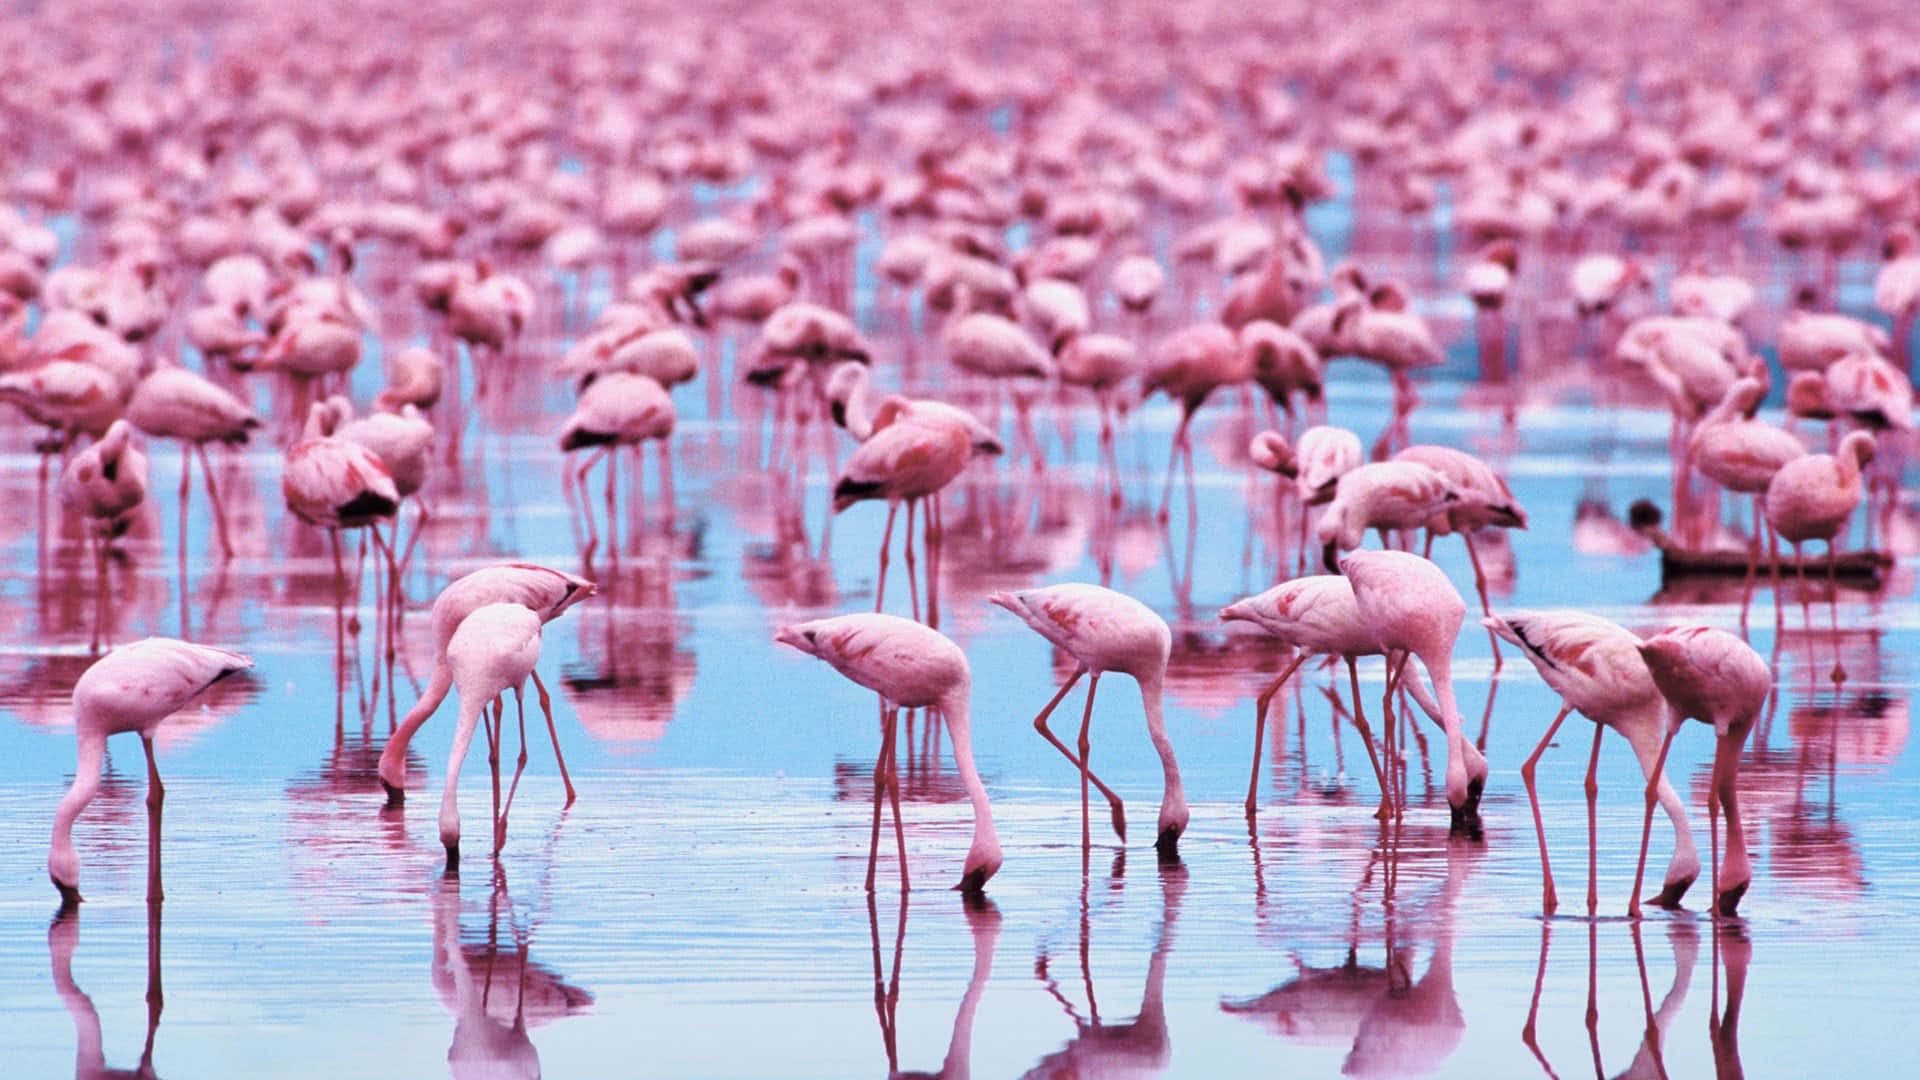 Tag din arbejde til nye højder med et rosa flamingo bærbar baggrundsbillede. Wallpaper